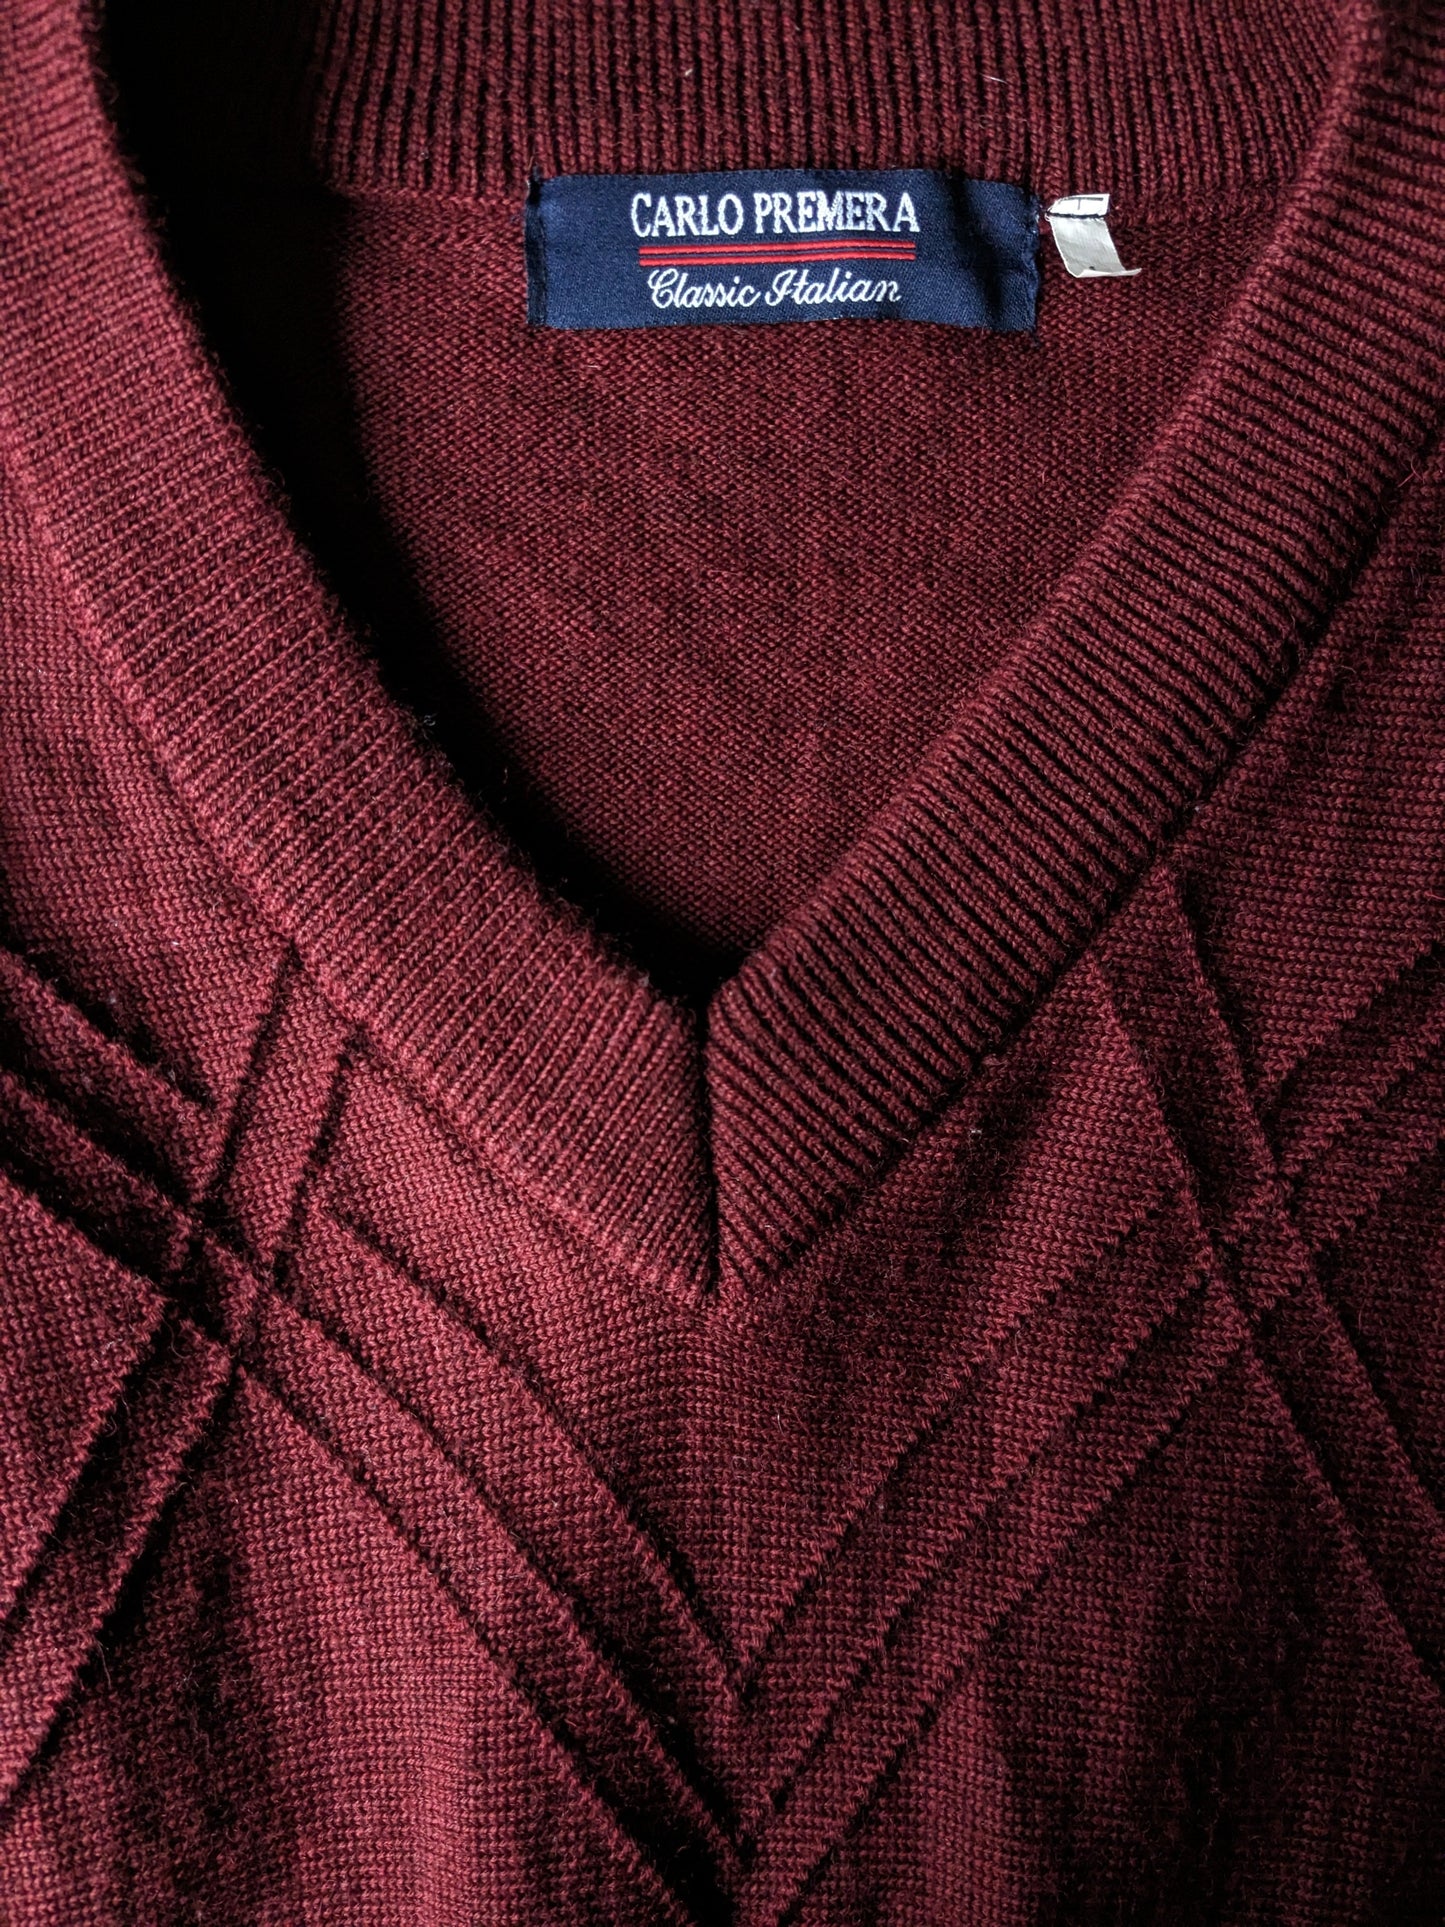 Suéter de lana Vintage Carlo Premera con cuello en V. Burdeos. Talla L.